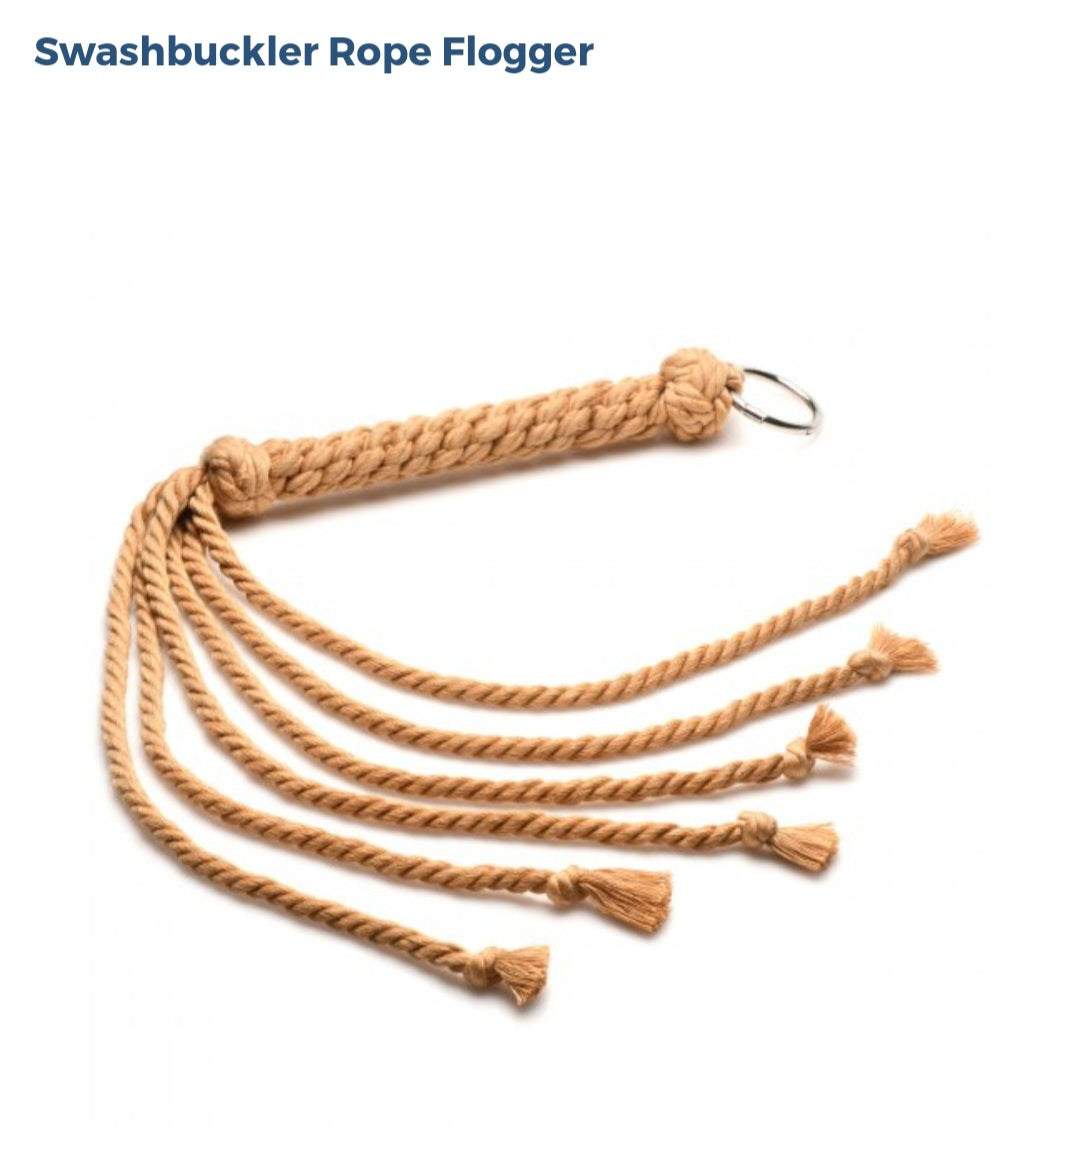 Swashbuckler Rope Flogger